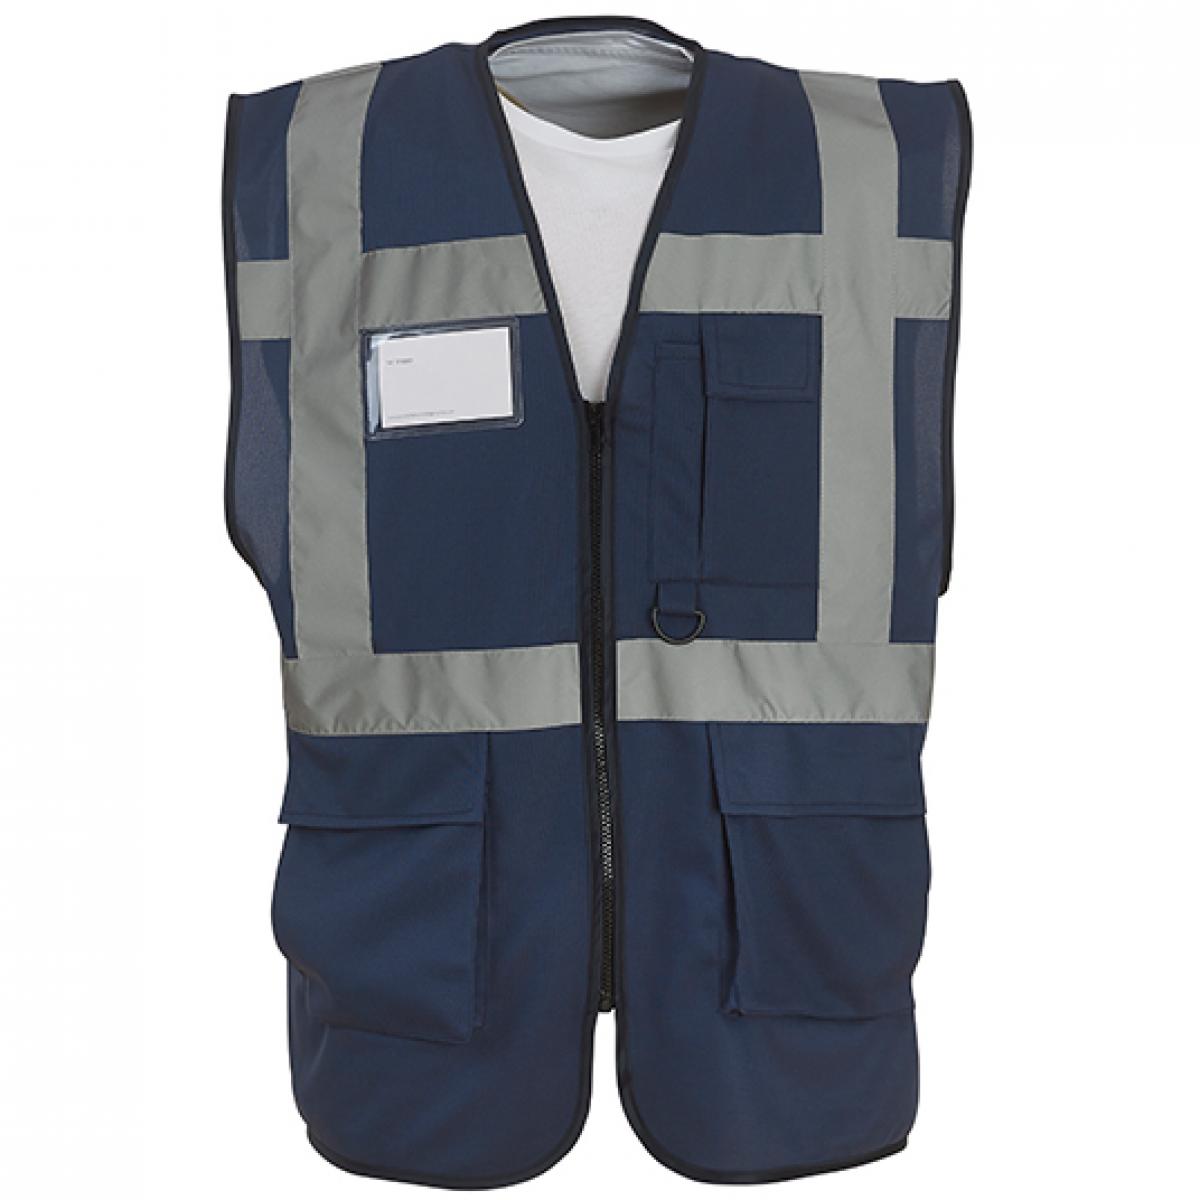 Hersteller: YOKO Herstellernummer: HVW801 Artikelbezeichnung: Herren Multi-Functional Executive Waistcoat Farbe: Navy